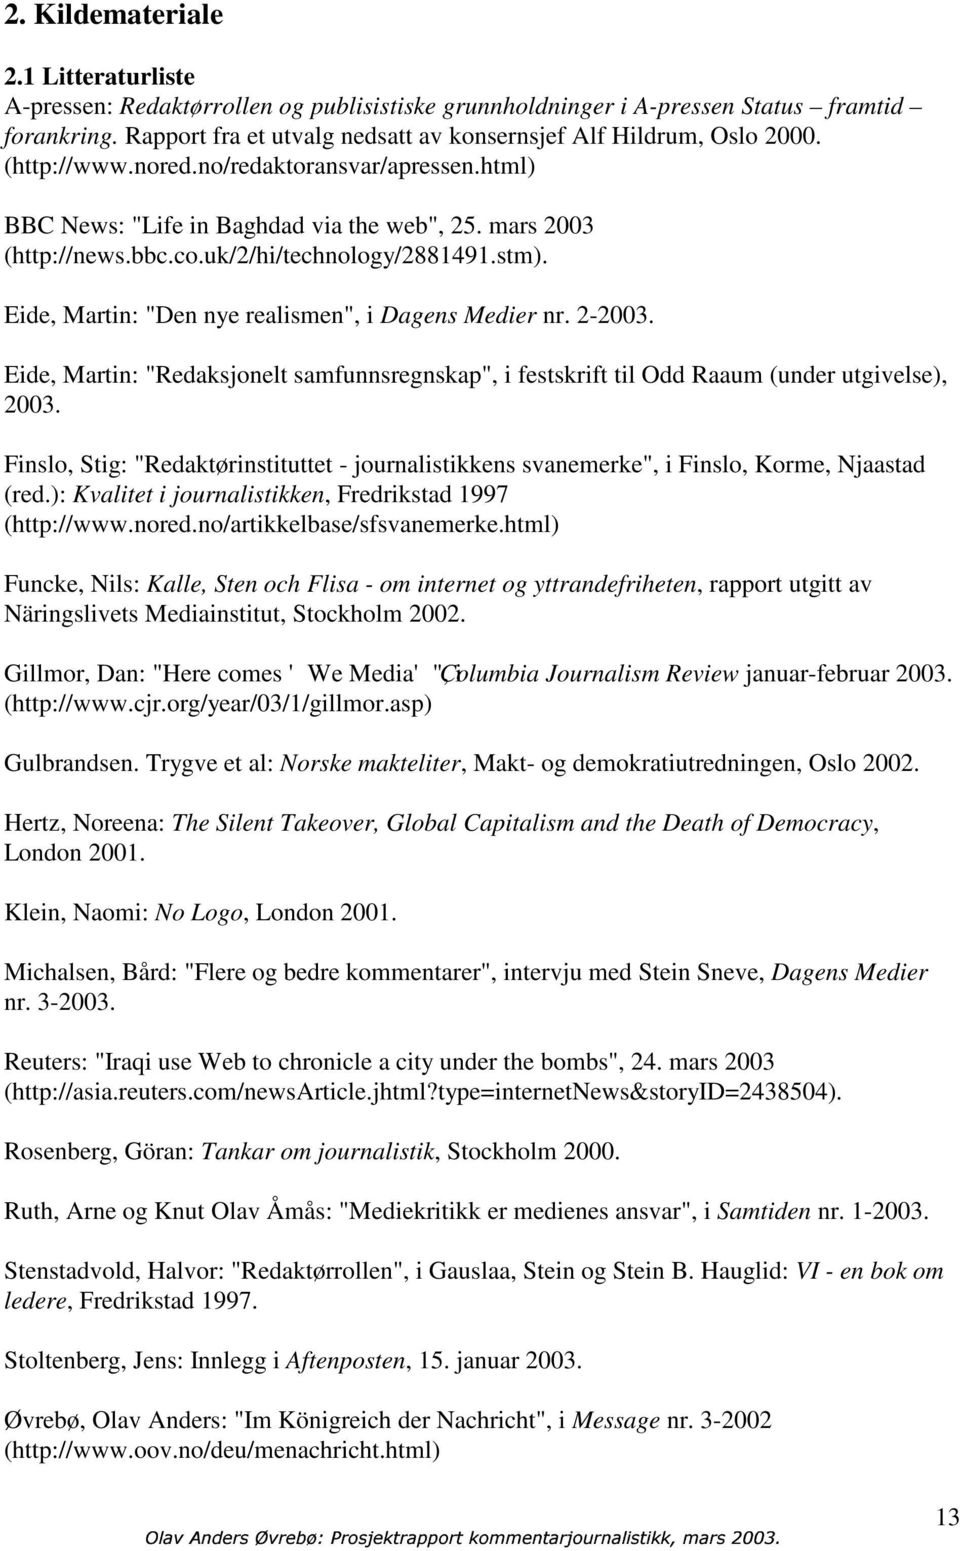 uk/2/hi/technology/2881491.stm). Eide, Martin: "Den nye realismen", i Dagens Medier nr. 2-2003. Eide, Martin: "Redaksjonelt samfunnsregnskap", i festskrift til Odd Raaum (under utgivelse), 2003.